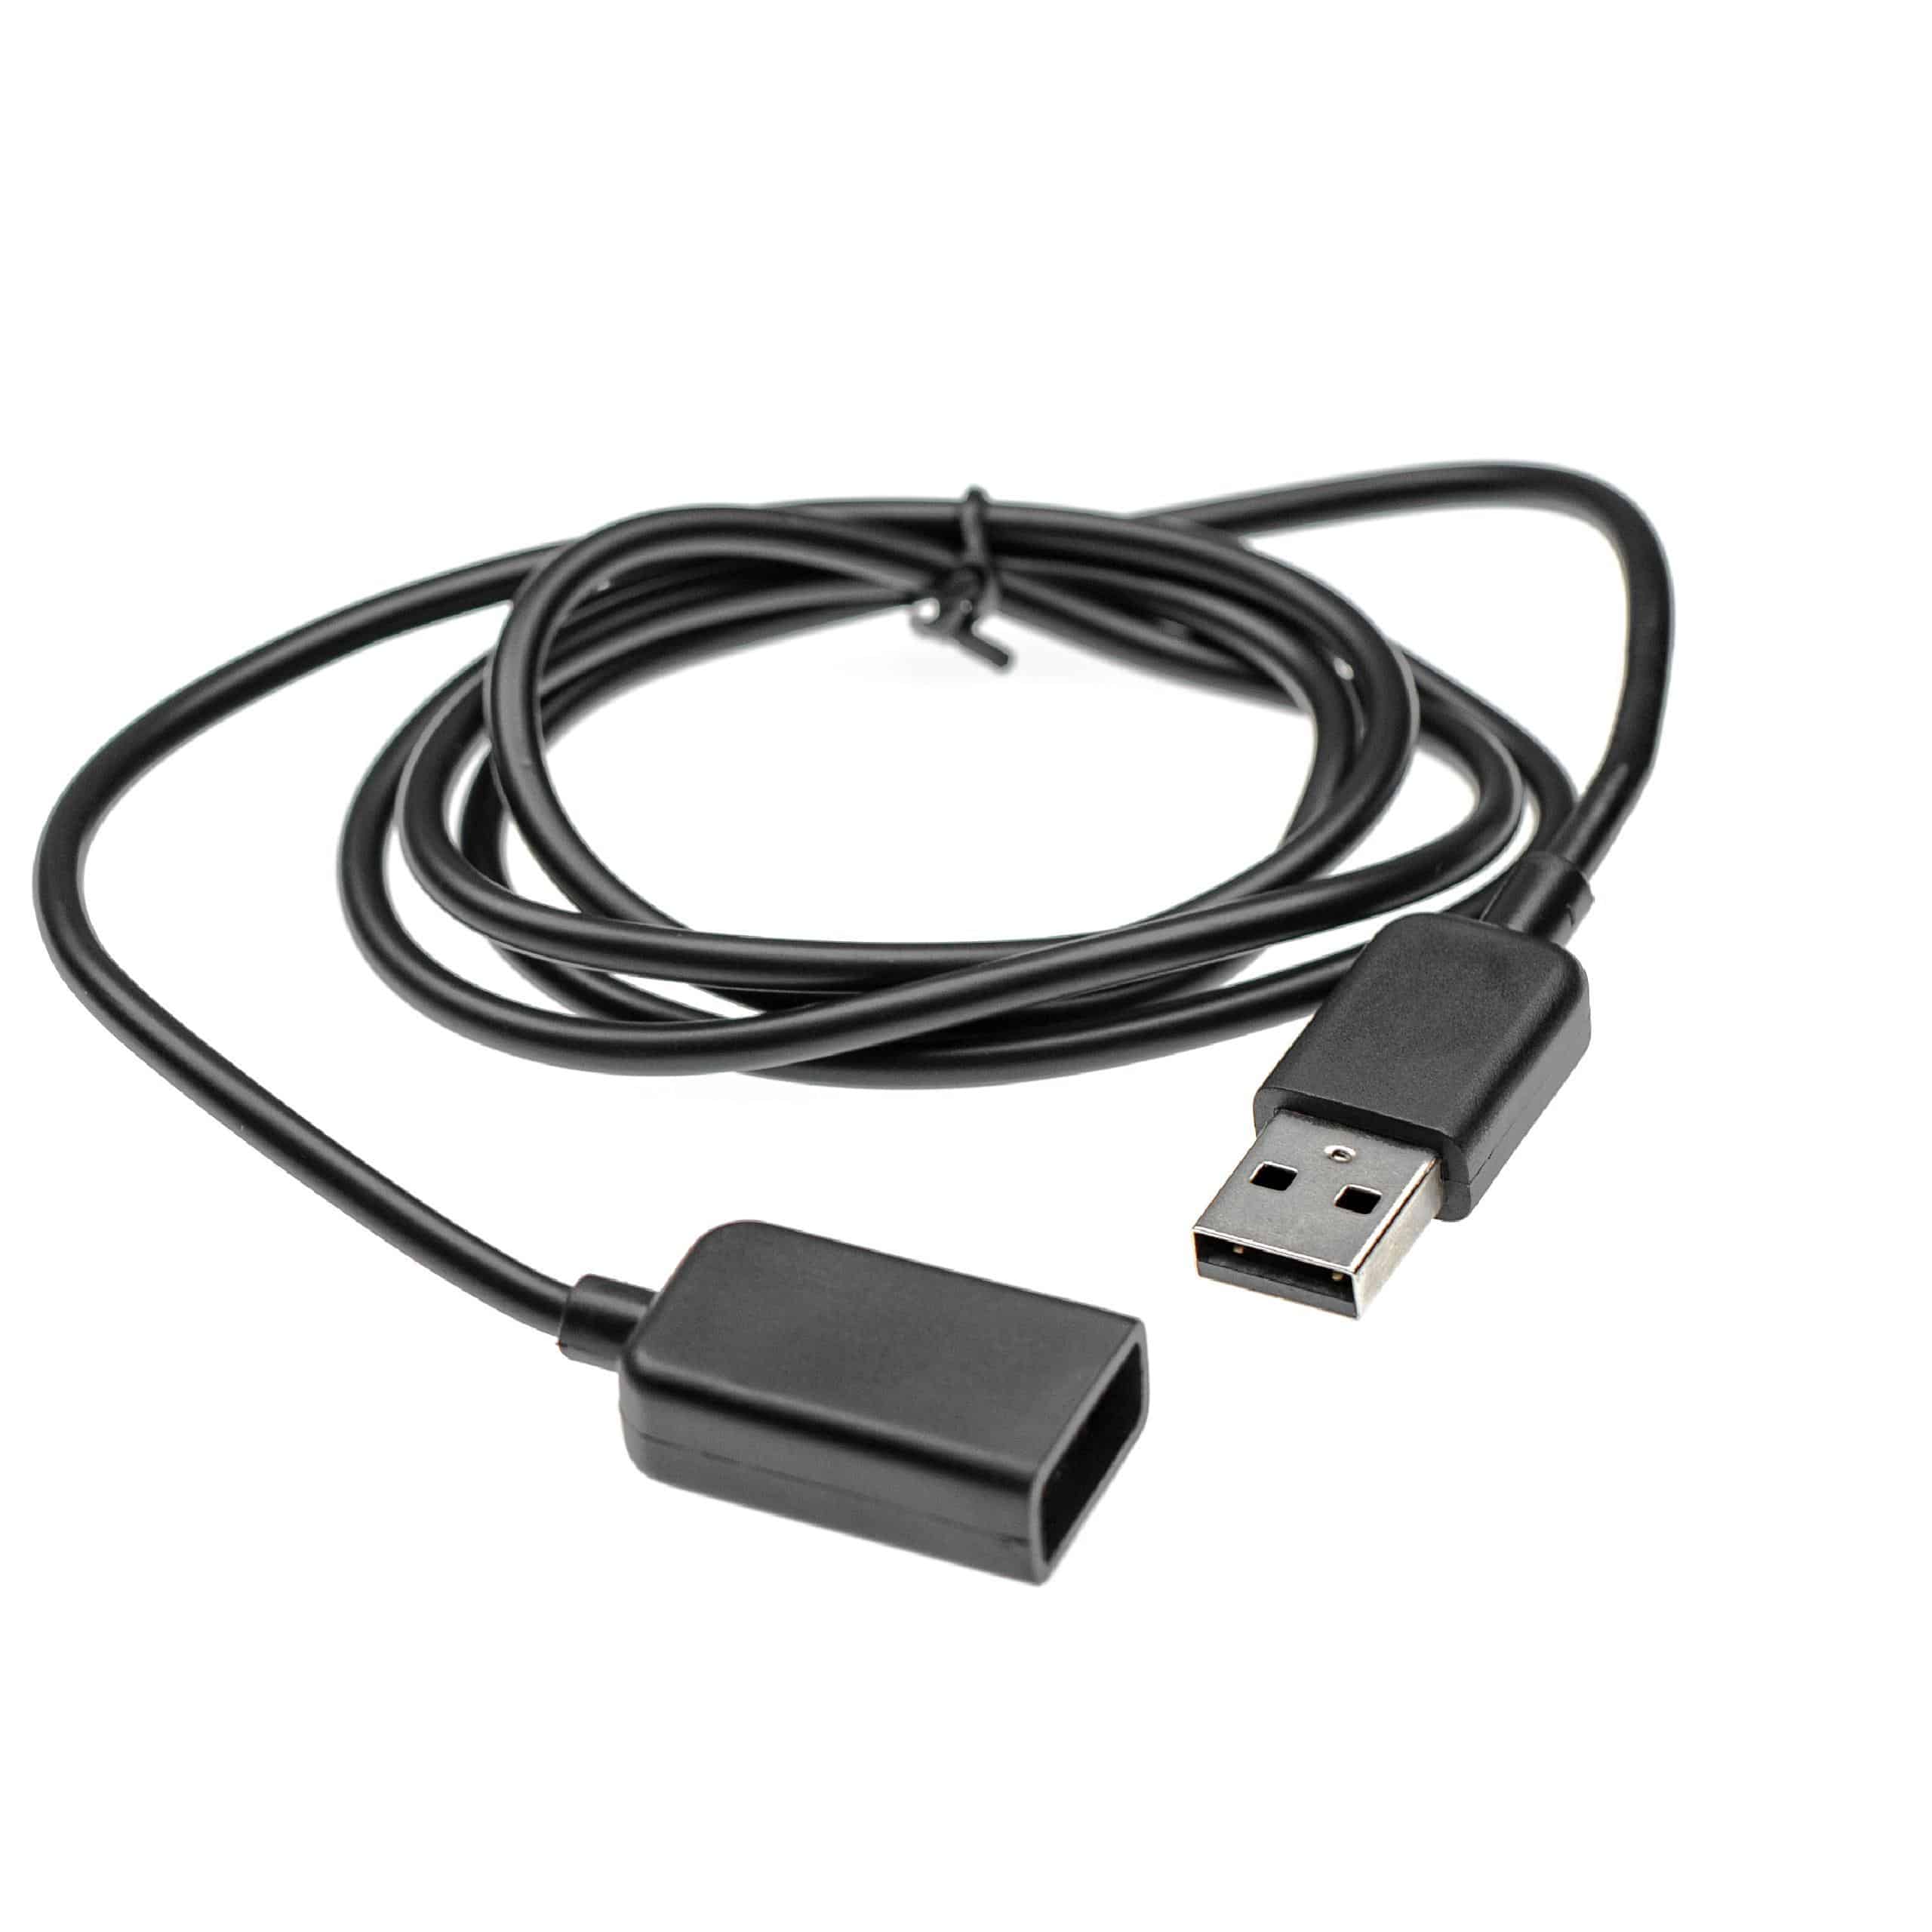 vhbw Cable alargador USB smartwatch, seguidor actividad, reloj deportivo - cable USB negro, 100 cm